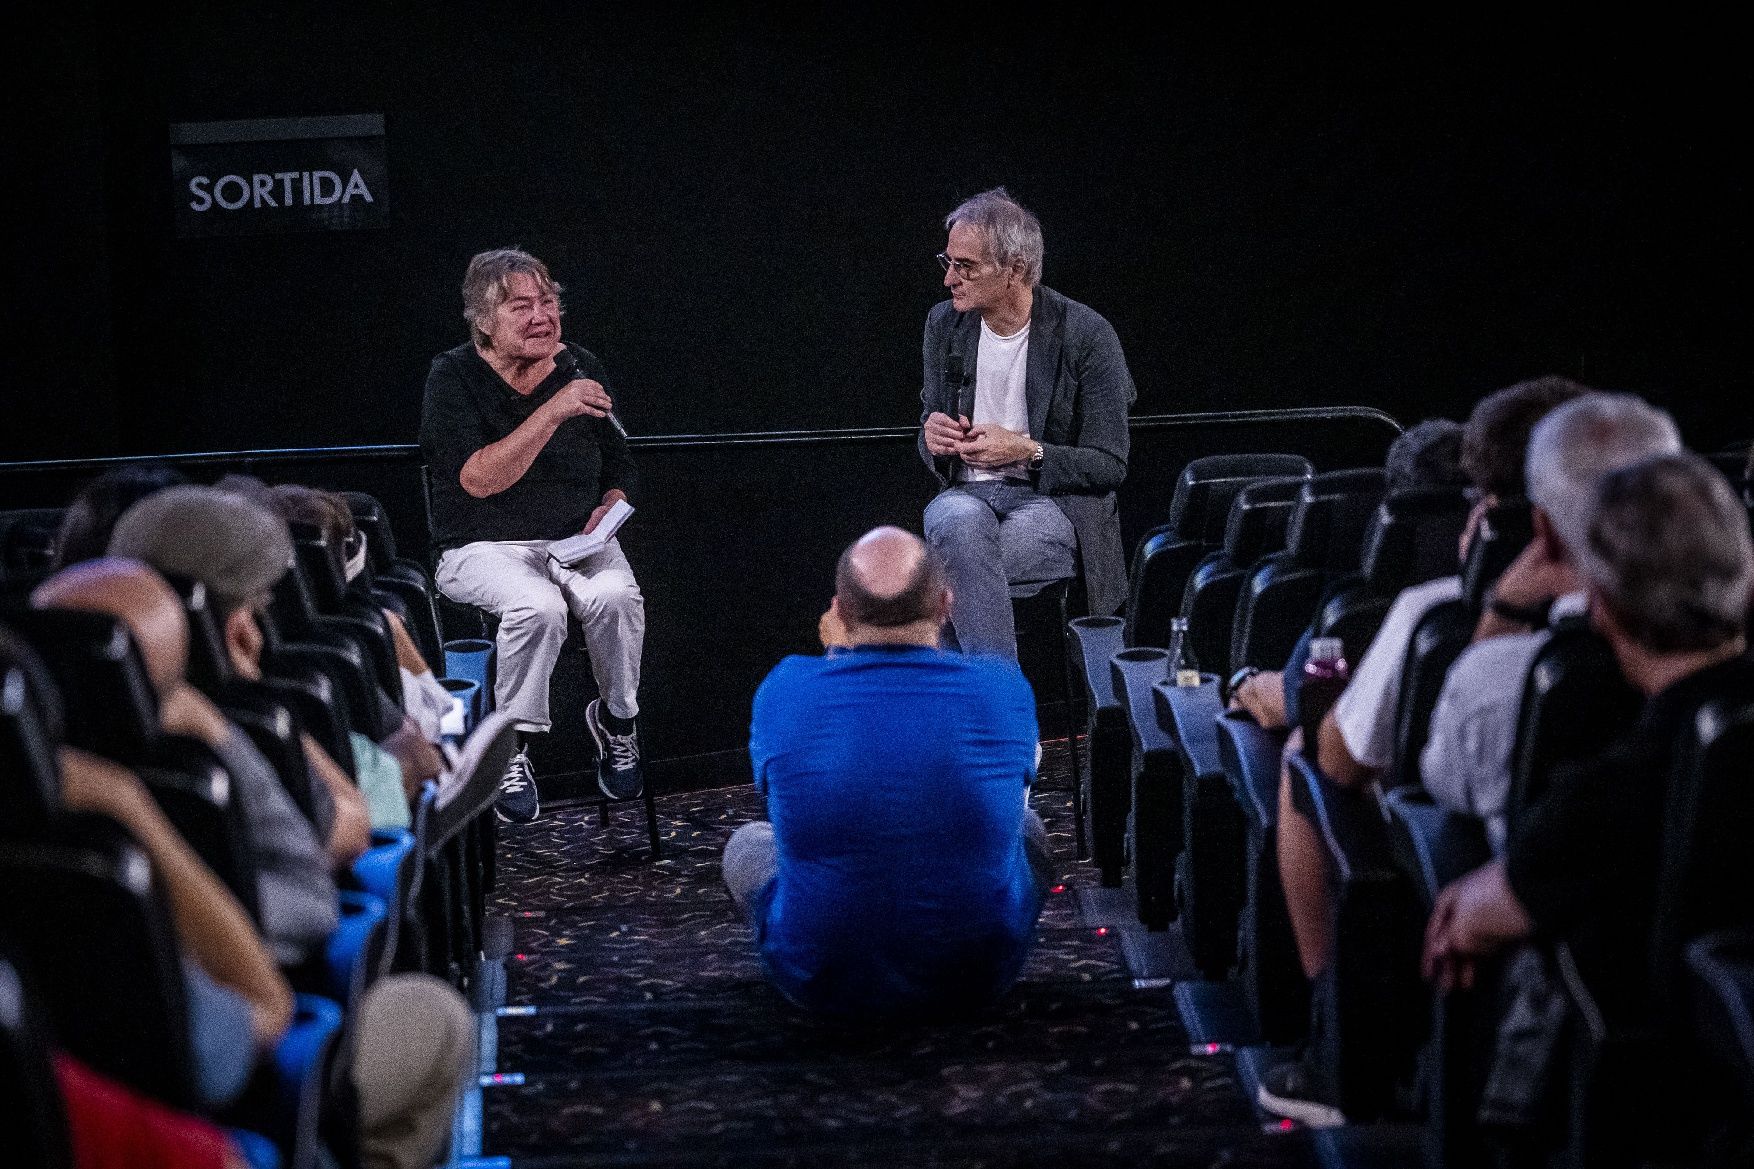 El cineasta francès Olivier Assayas rep un dels premis d'Honor del festival Clam